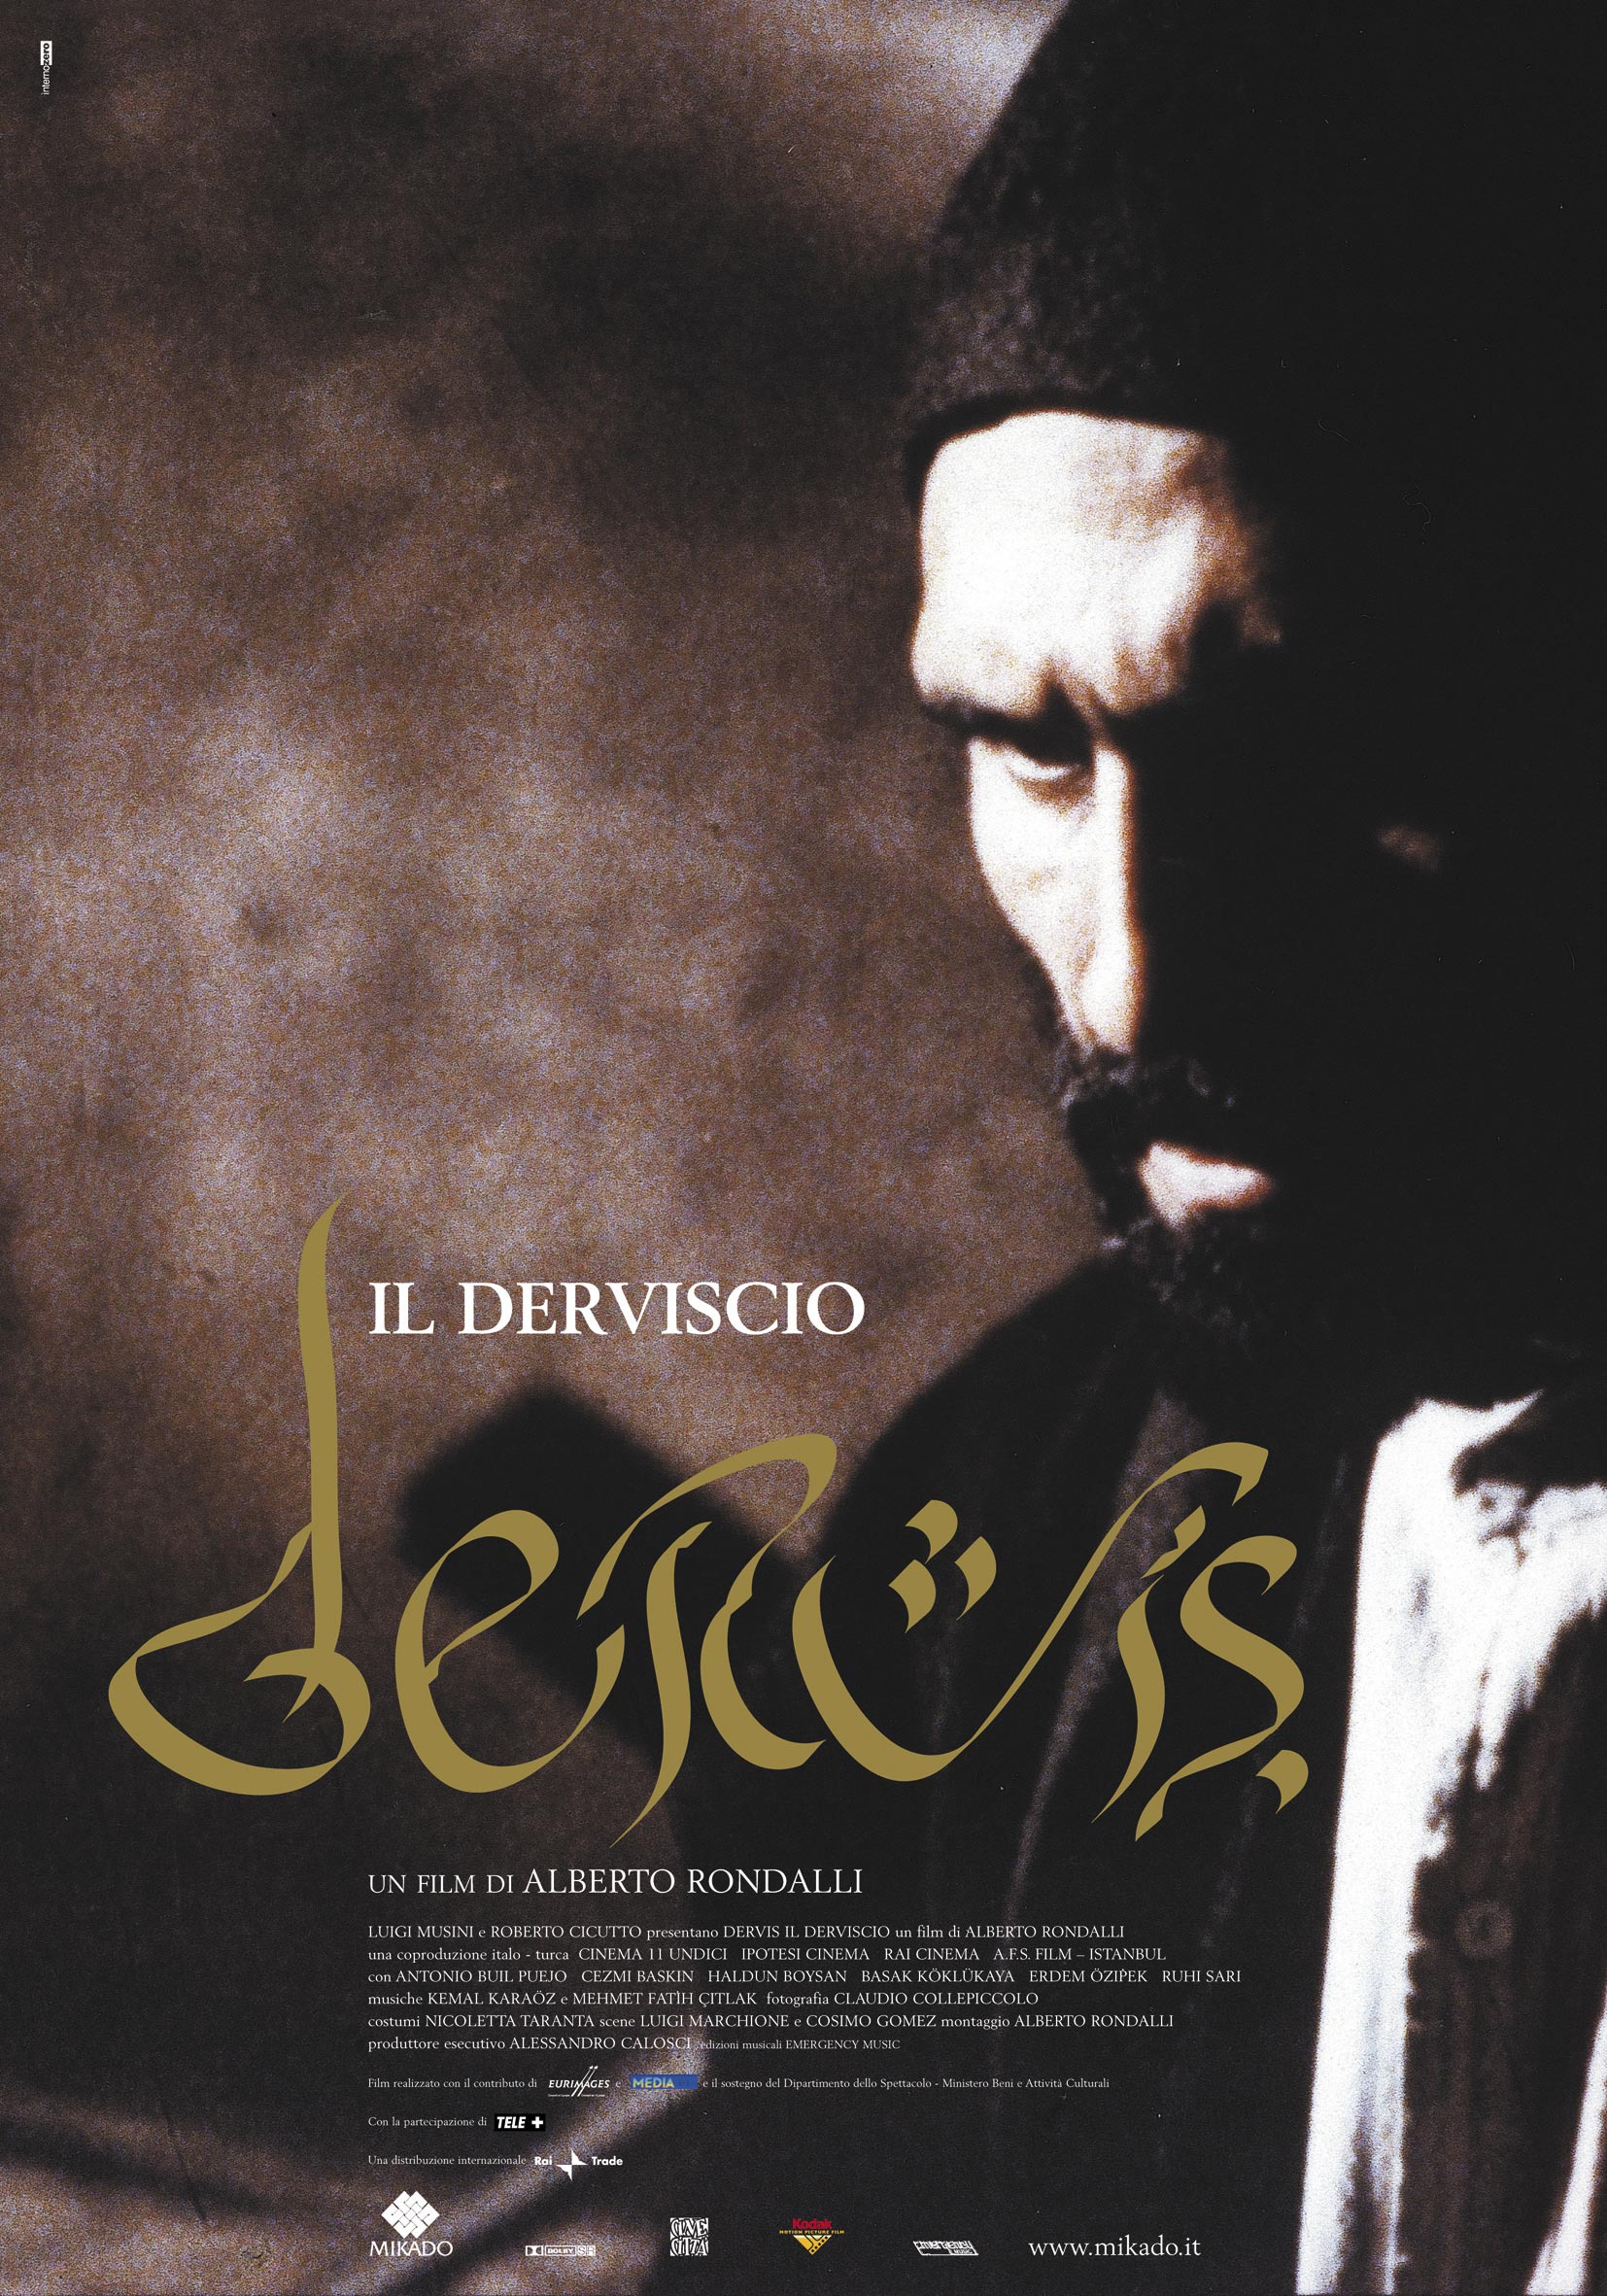 Mega Sized Movie Poster Image for Il derviscio 